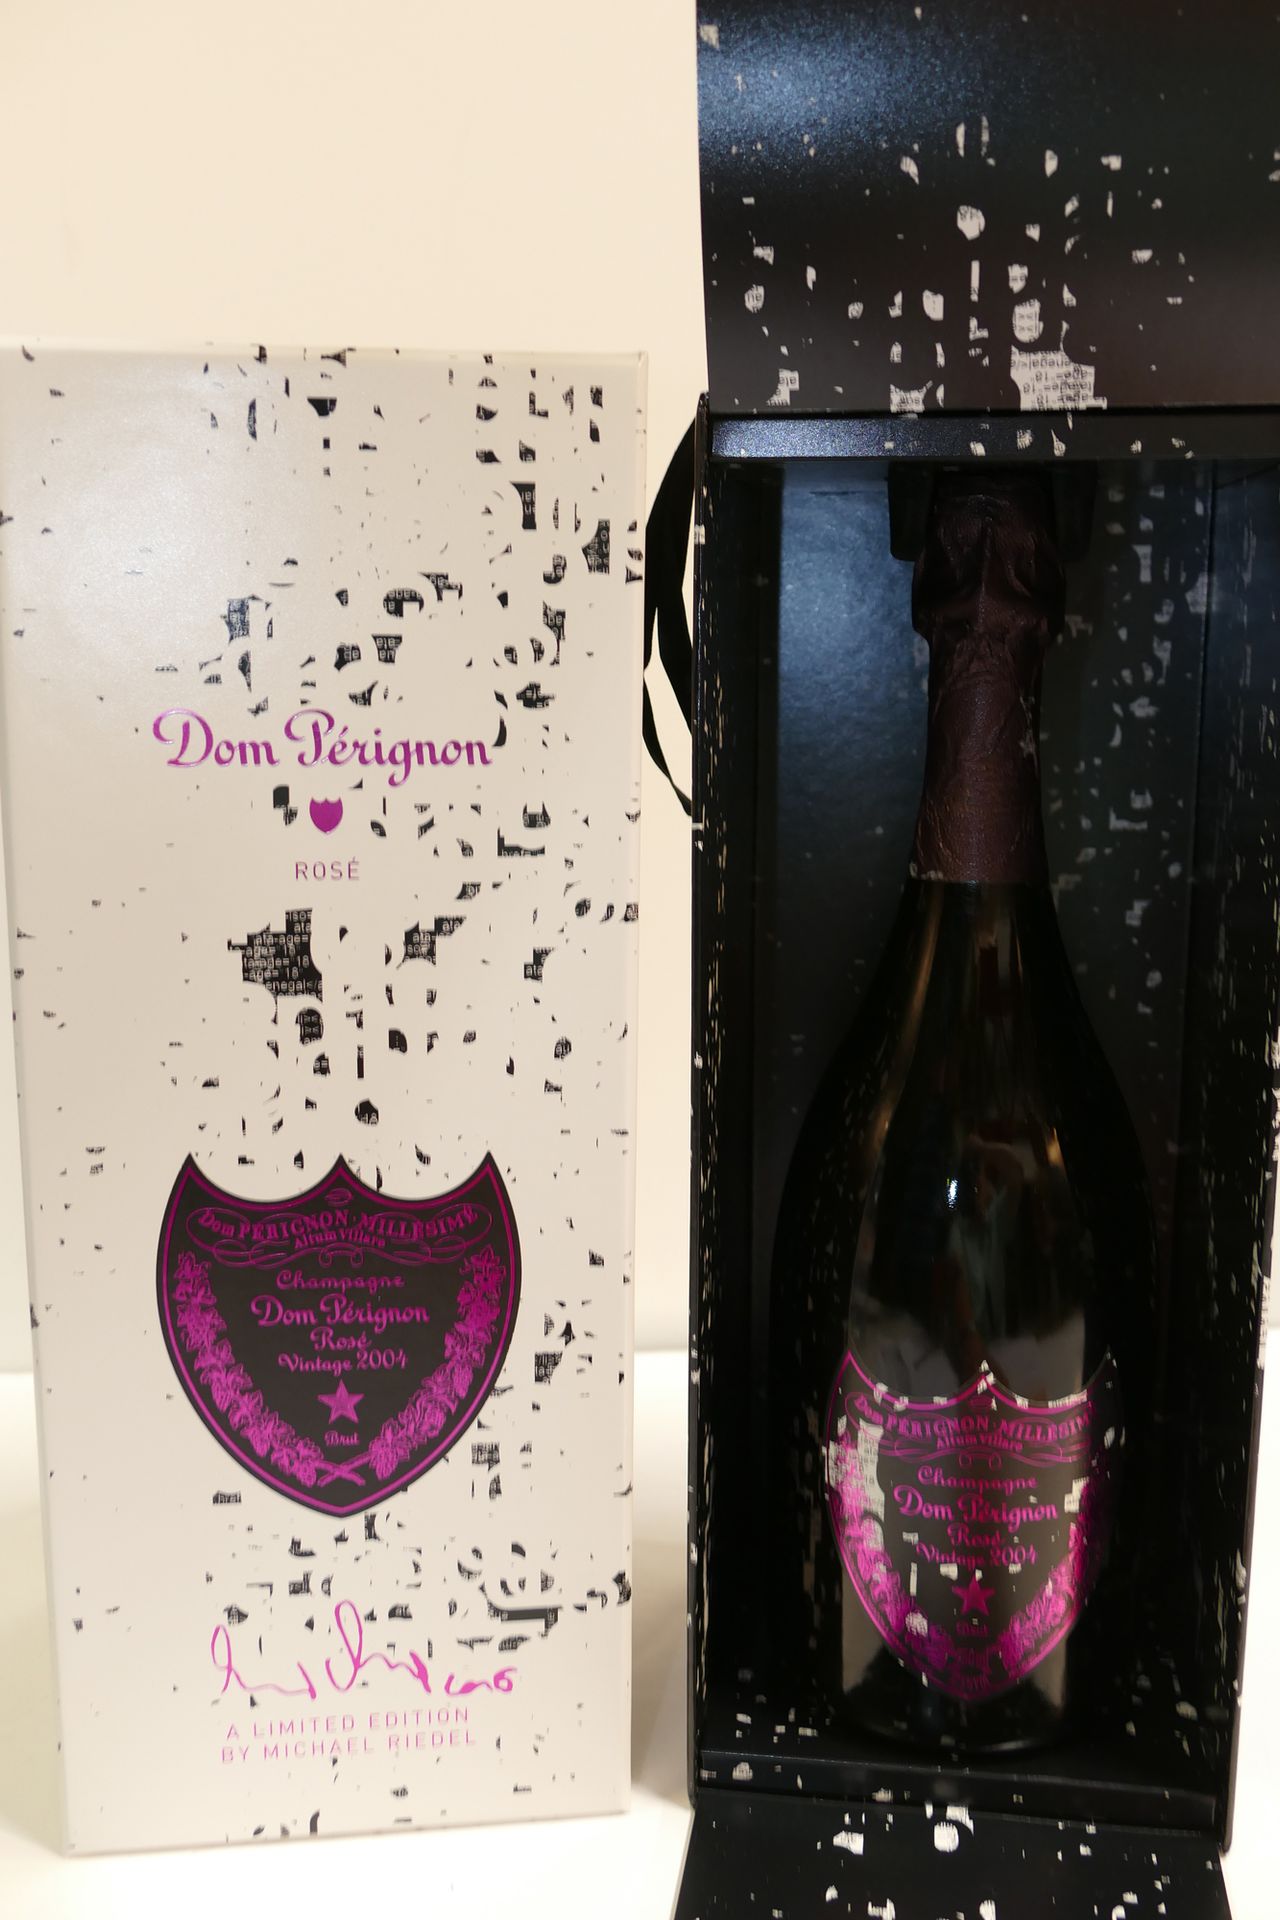 Null 1 Btle Champagne Dom Pérignon rosé 2004 Edition limitée Michael Riedel en c&hellip;